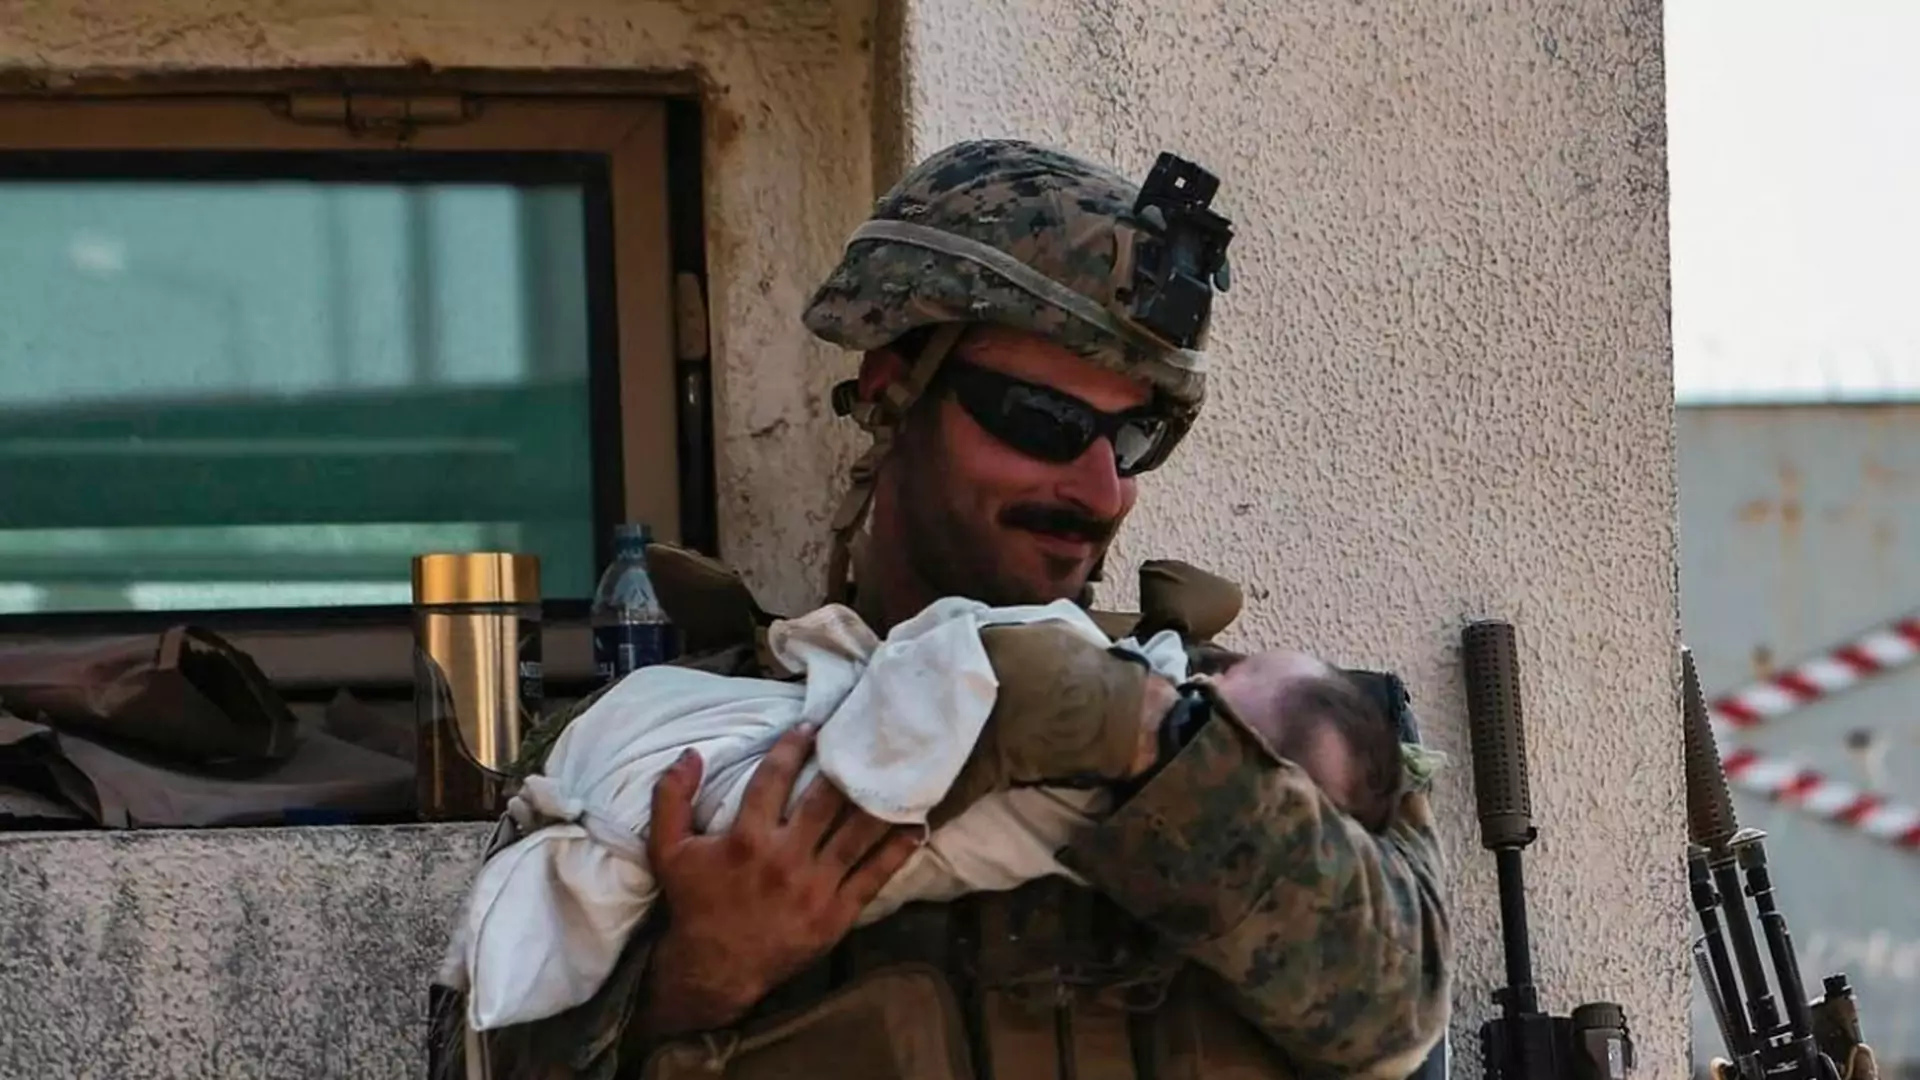 Żołnierz uspokaja niemowlę podczas ewakuacji. To zdjęcie poruszyło świat 